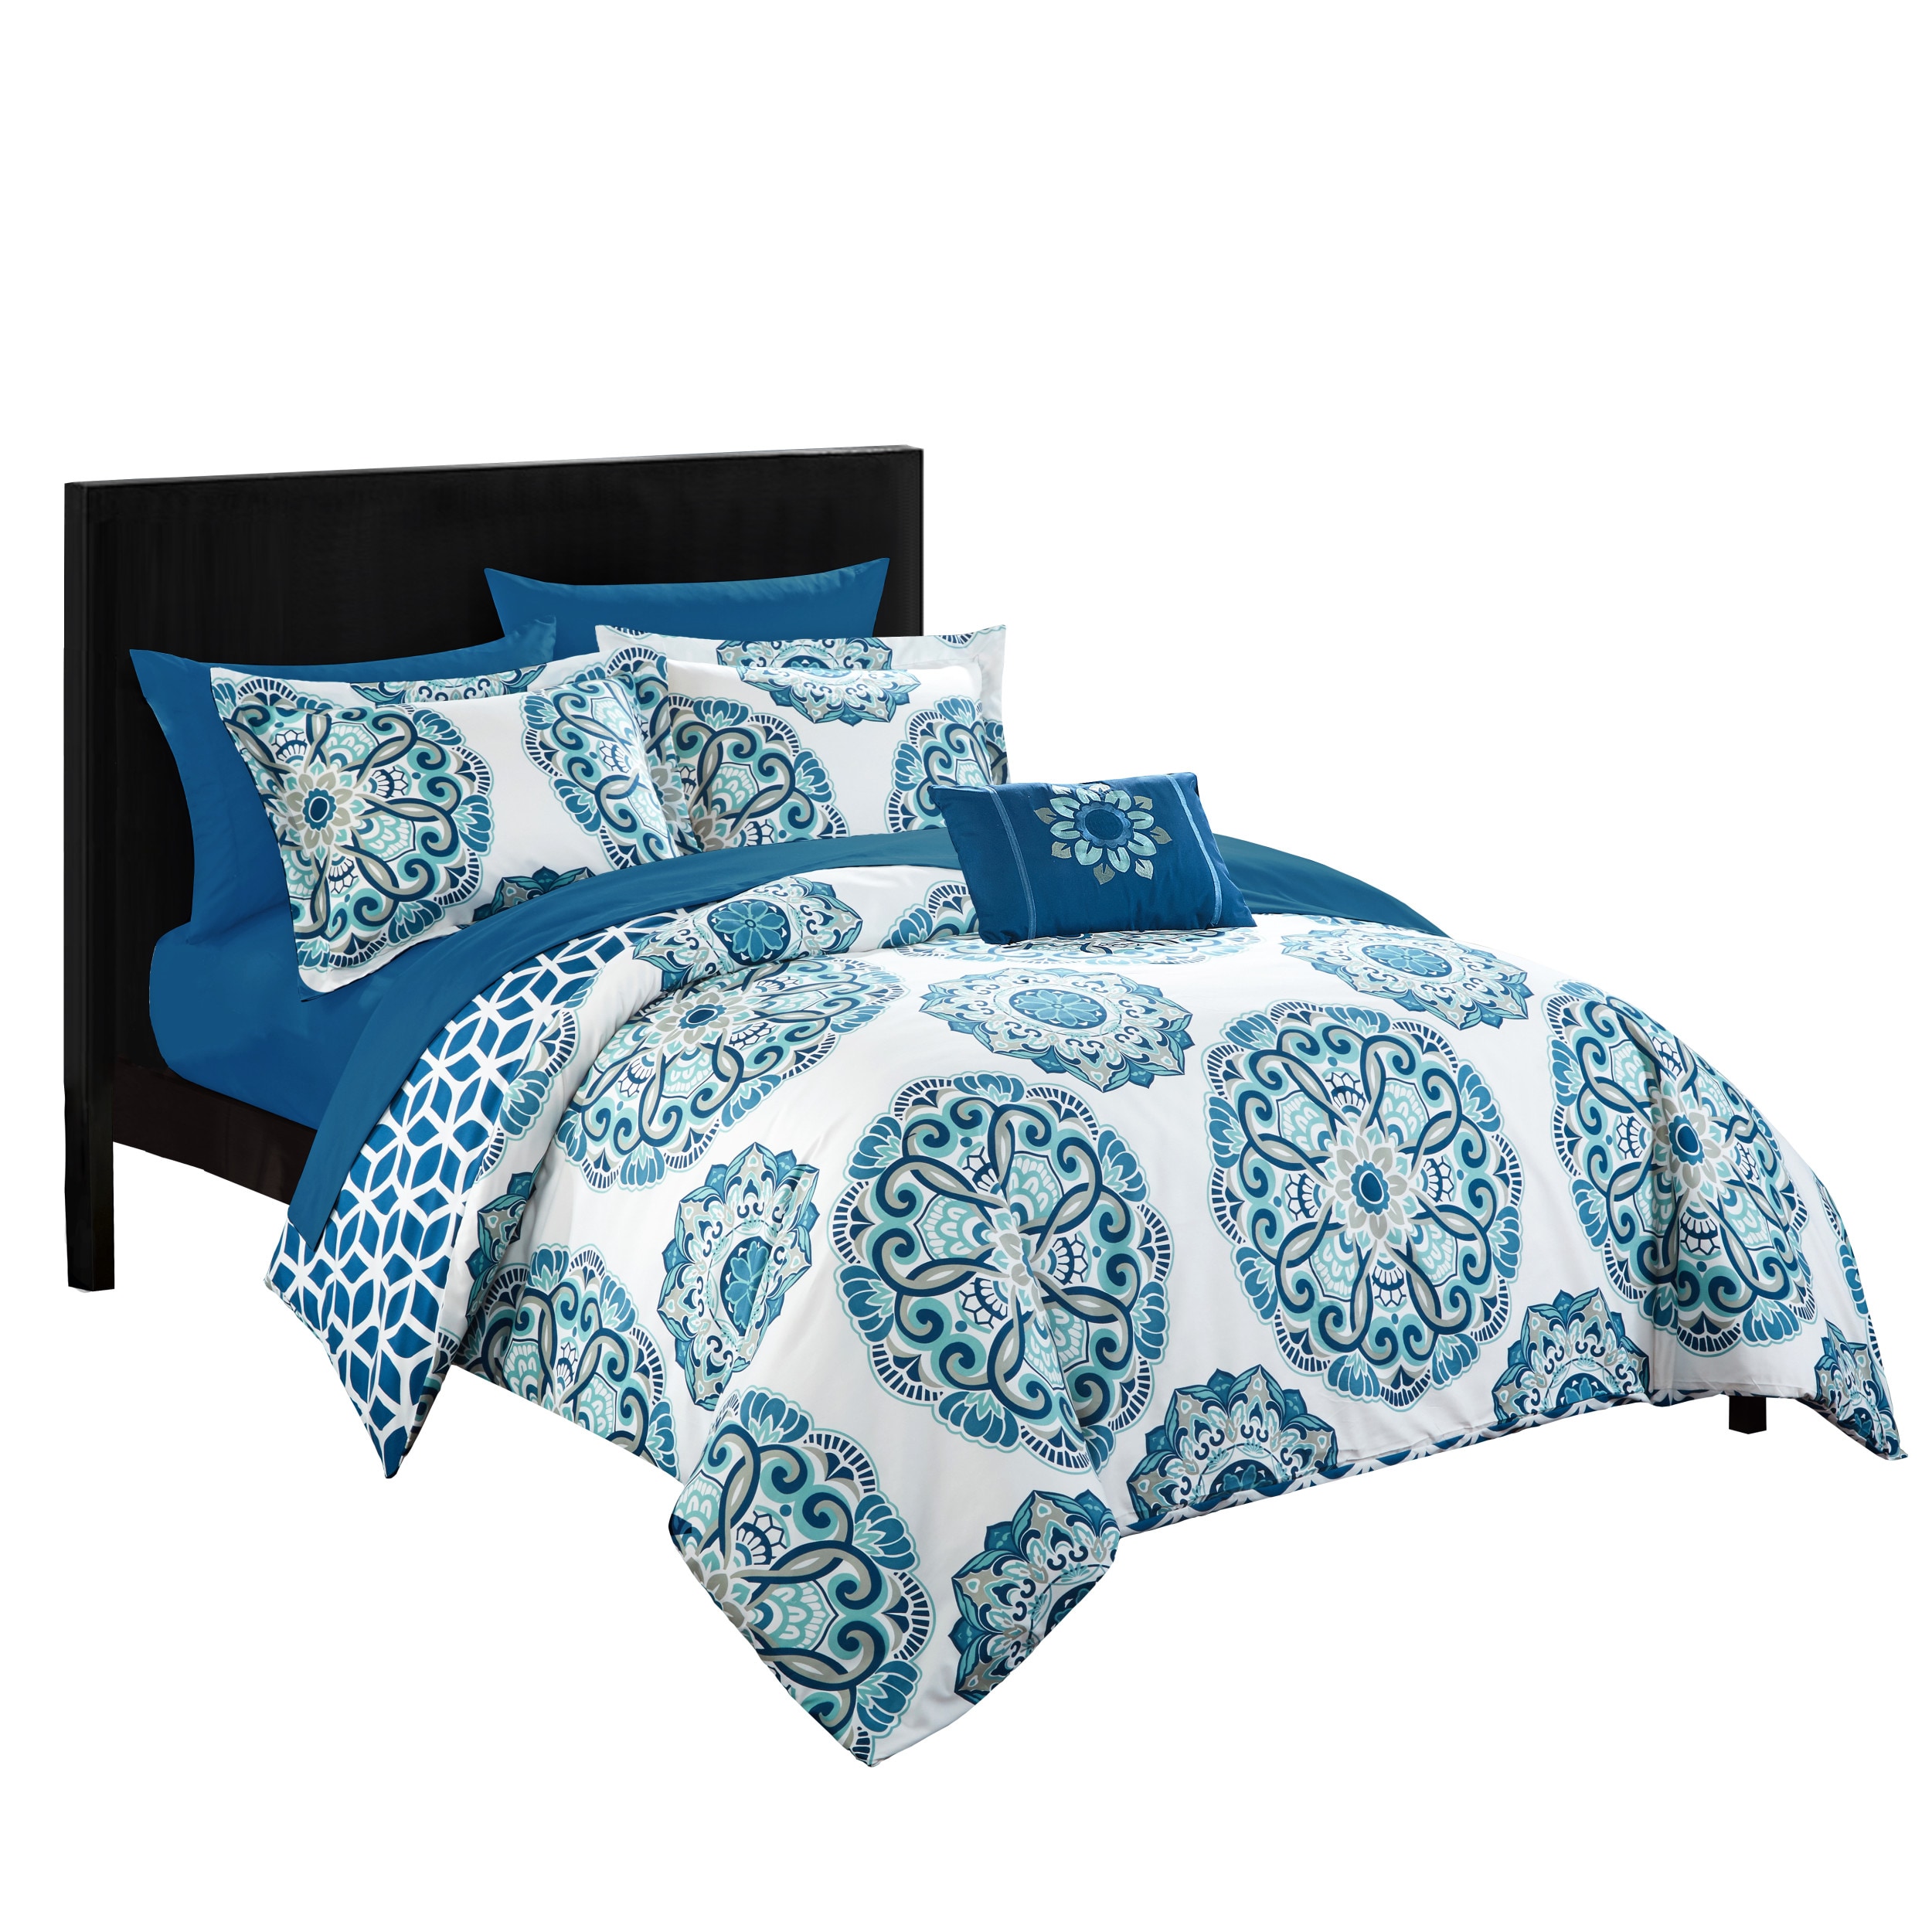 Blue Chic Home Barcelona 8 Piece Reversible Comforter Set Full/Queen